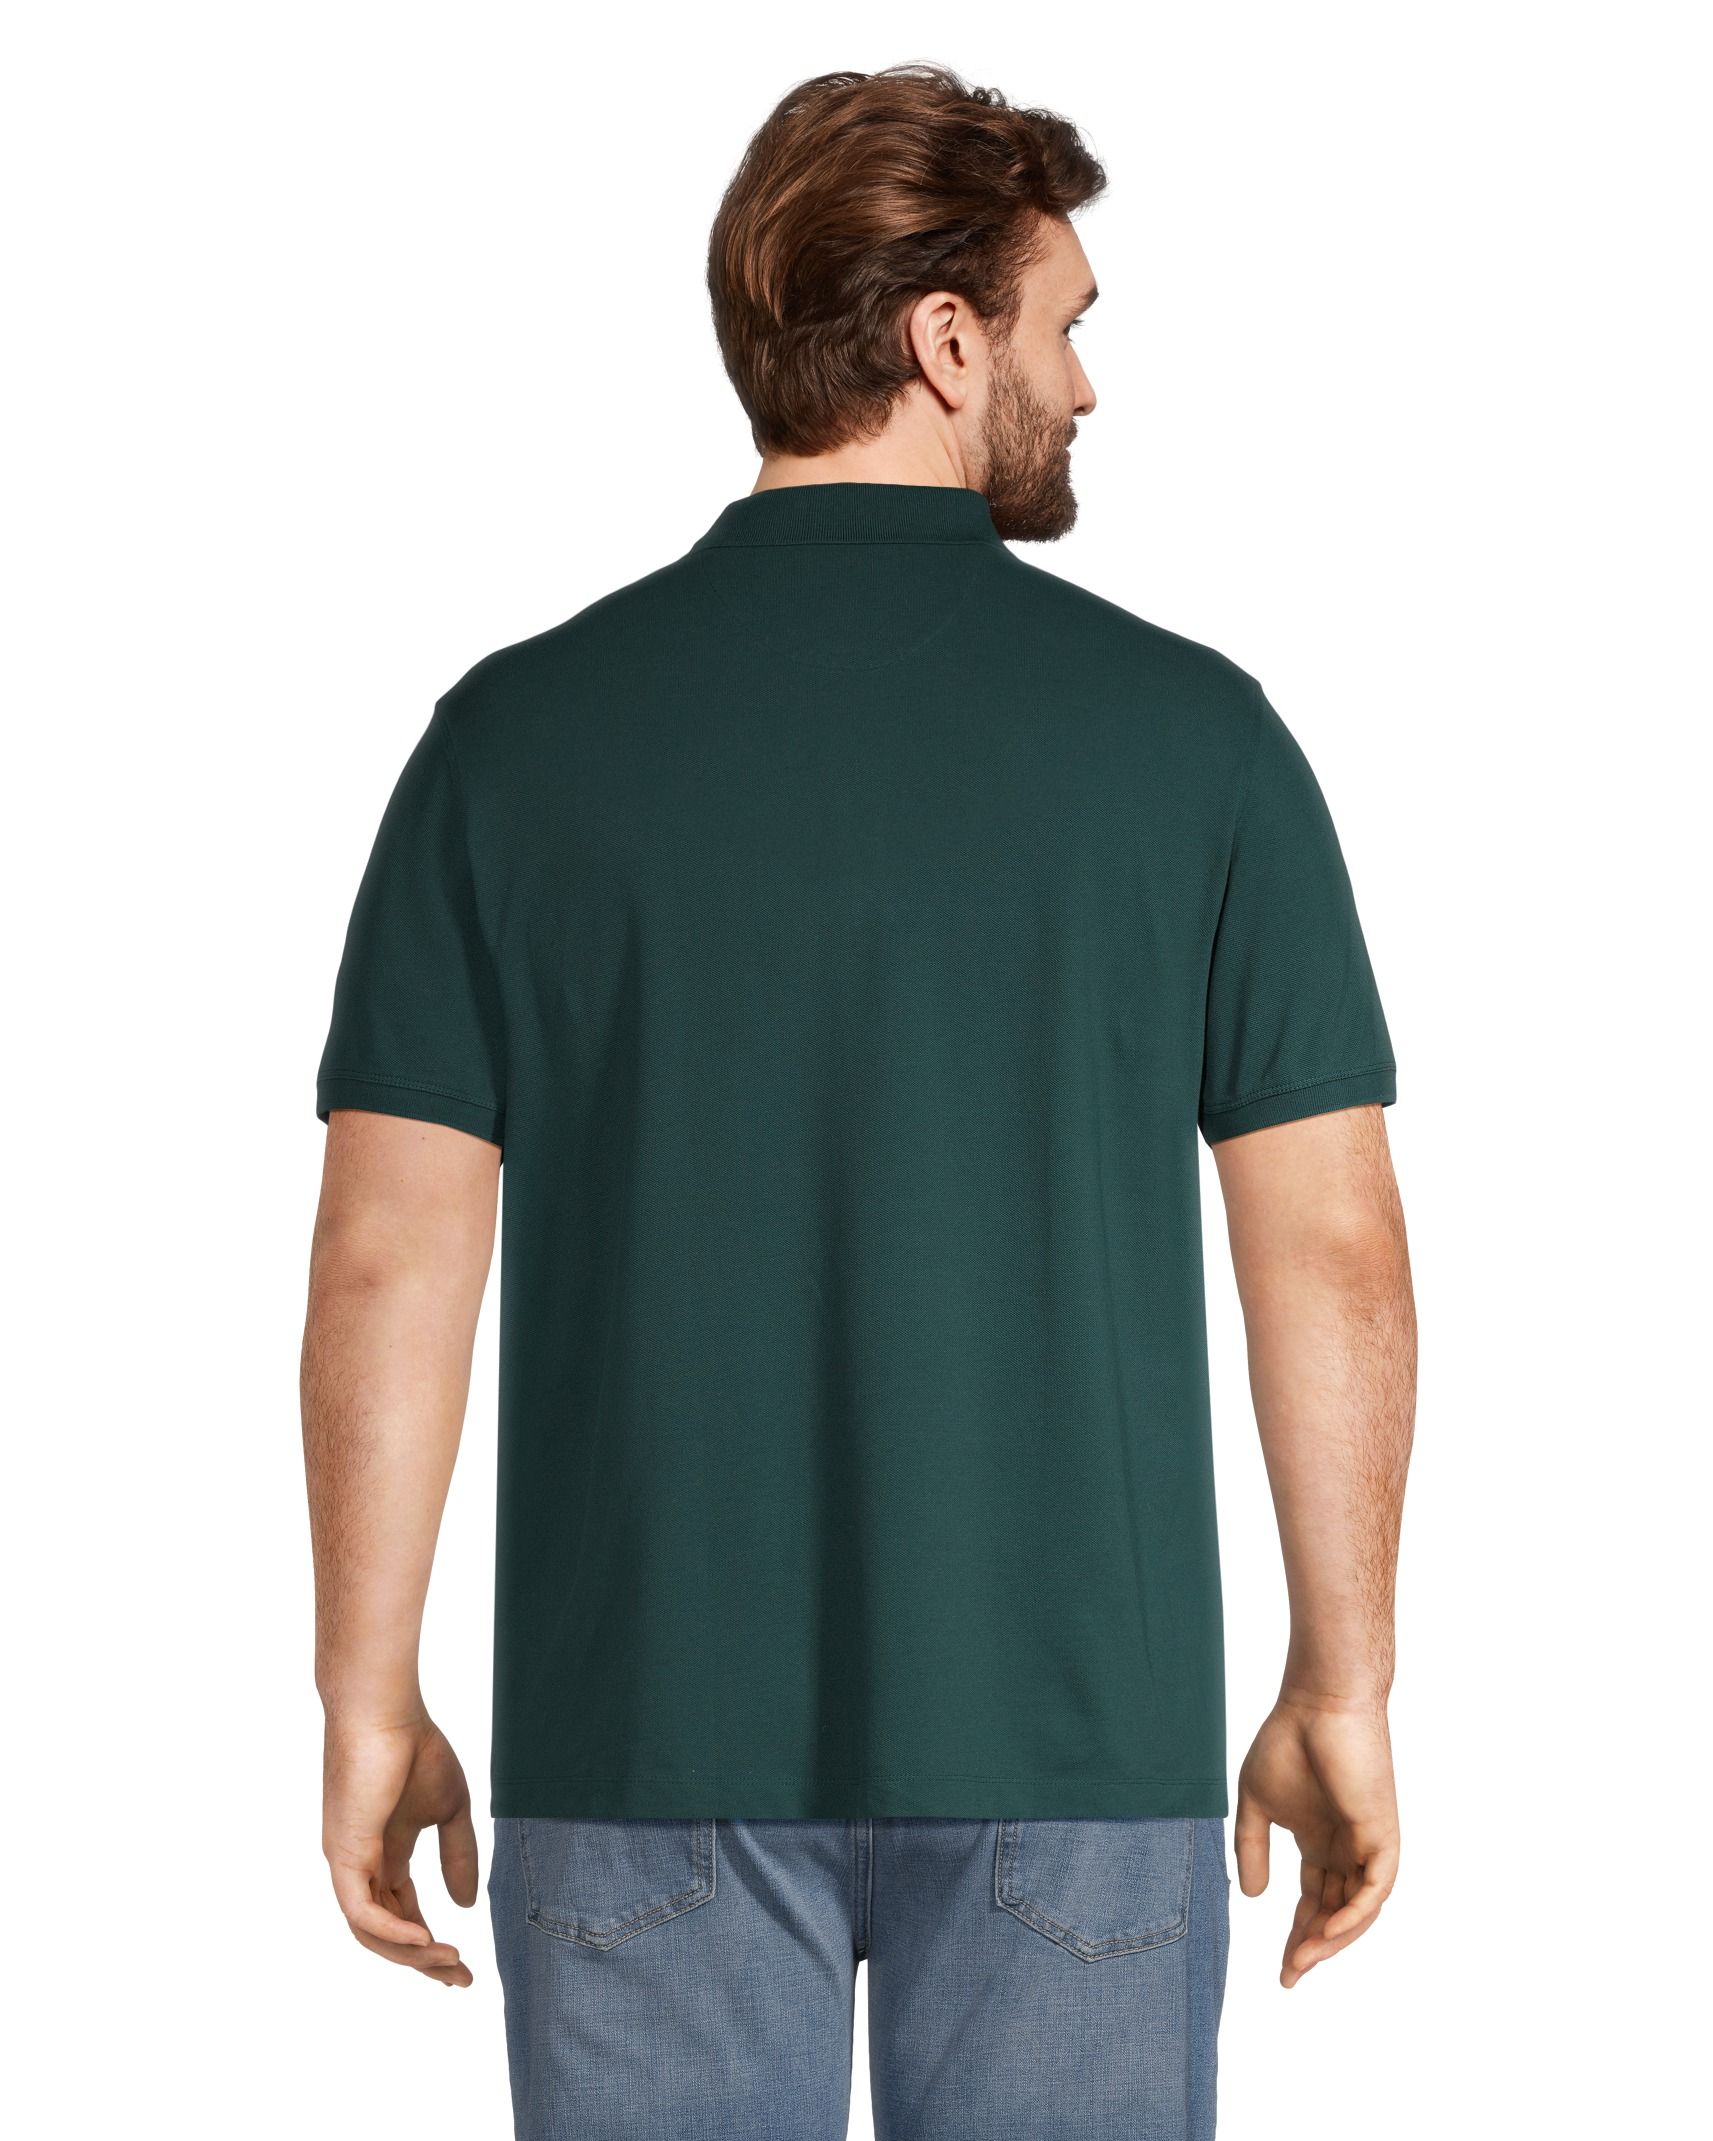 Denver Hayes Men's Stretch Modern Fit Crewneck T Shirt